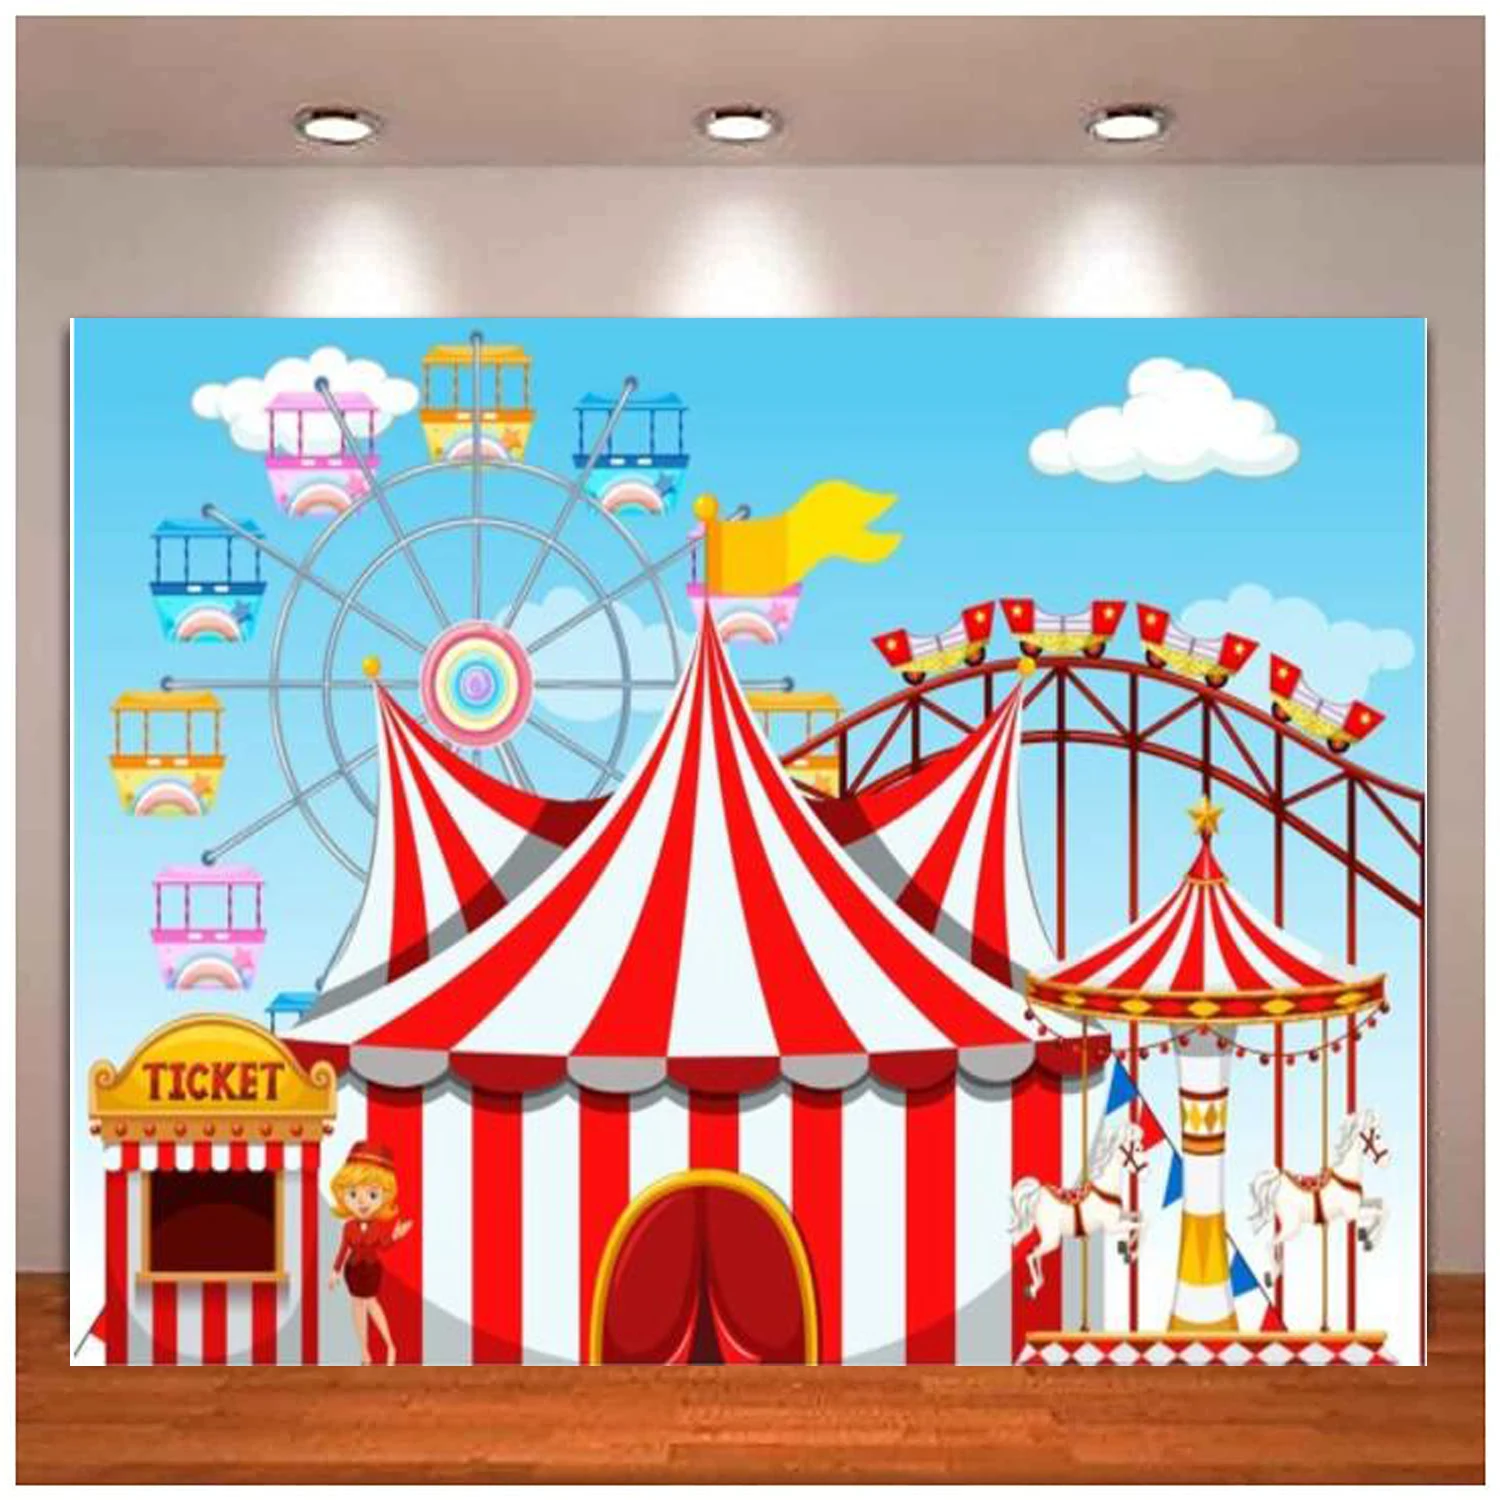 

Цирк палатка фотография Фон колесо обозрения карусель американские горки парк развлечений фон день Рождения Вечеринка Baby Shower